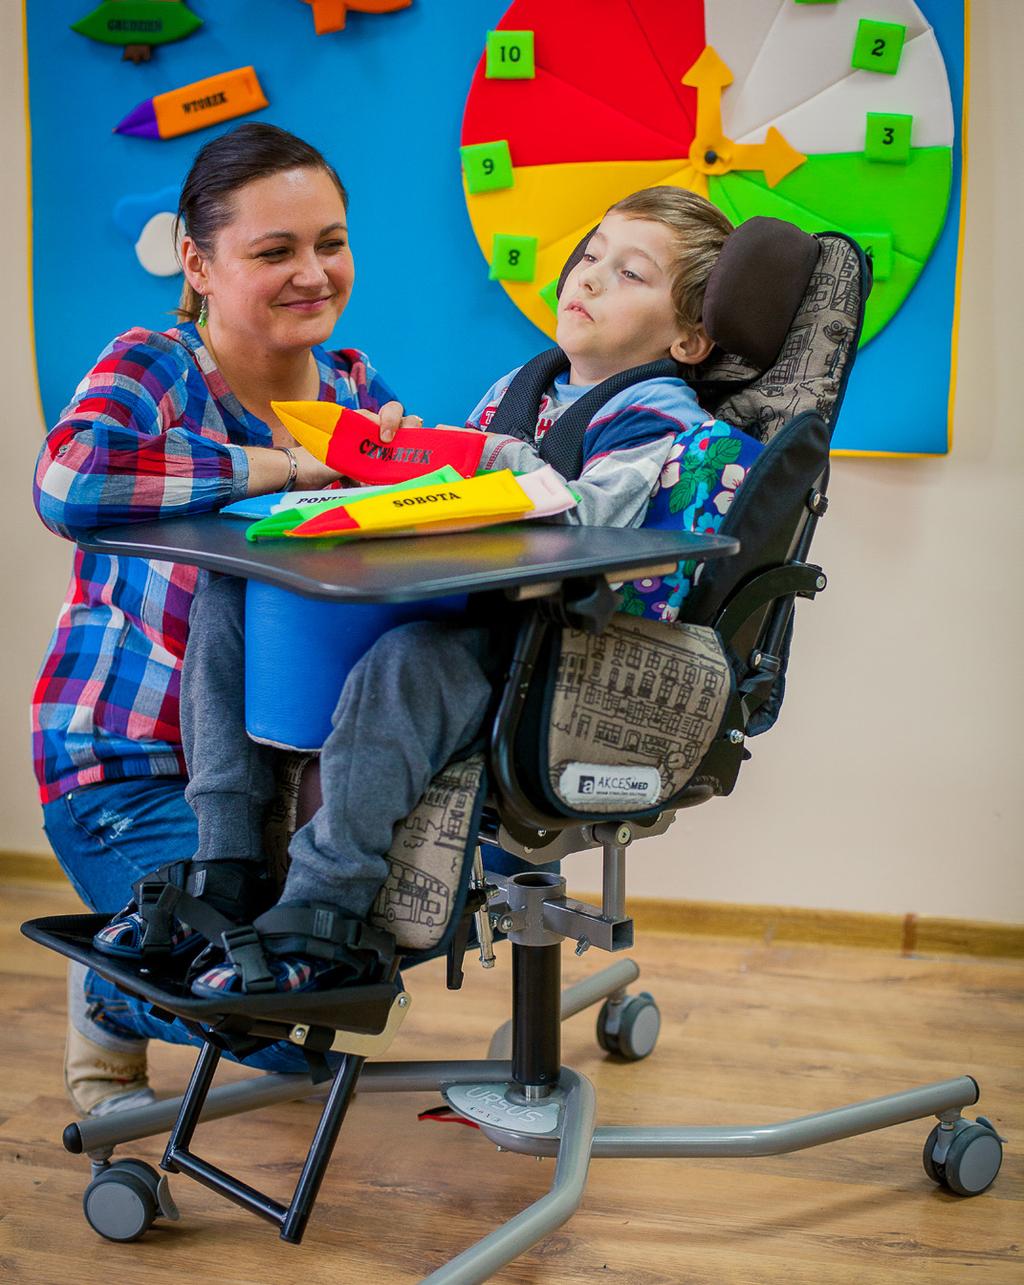 Bogate wyposażenie i szeroki zakres regulacji pozwala na odpowiednie dopasowanie wózka do potrzeb i dysfunkcji dziecka.